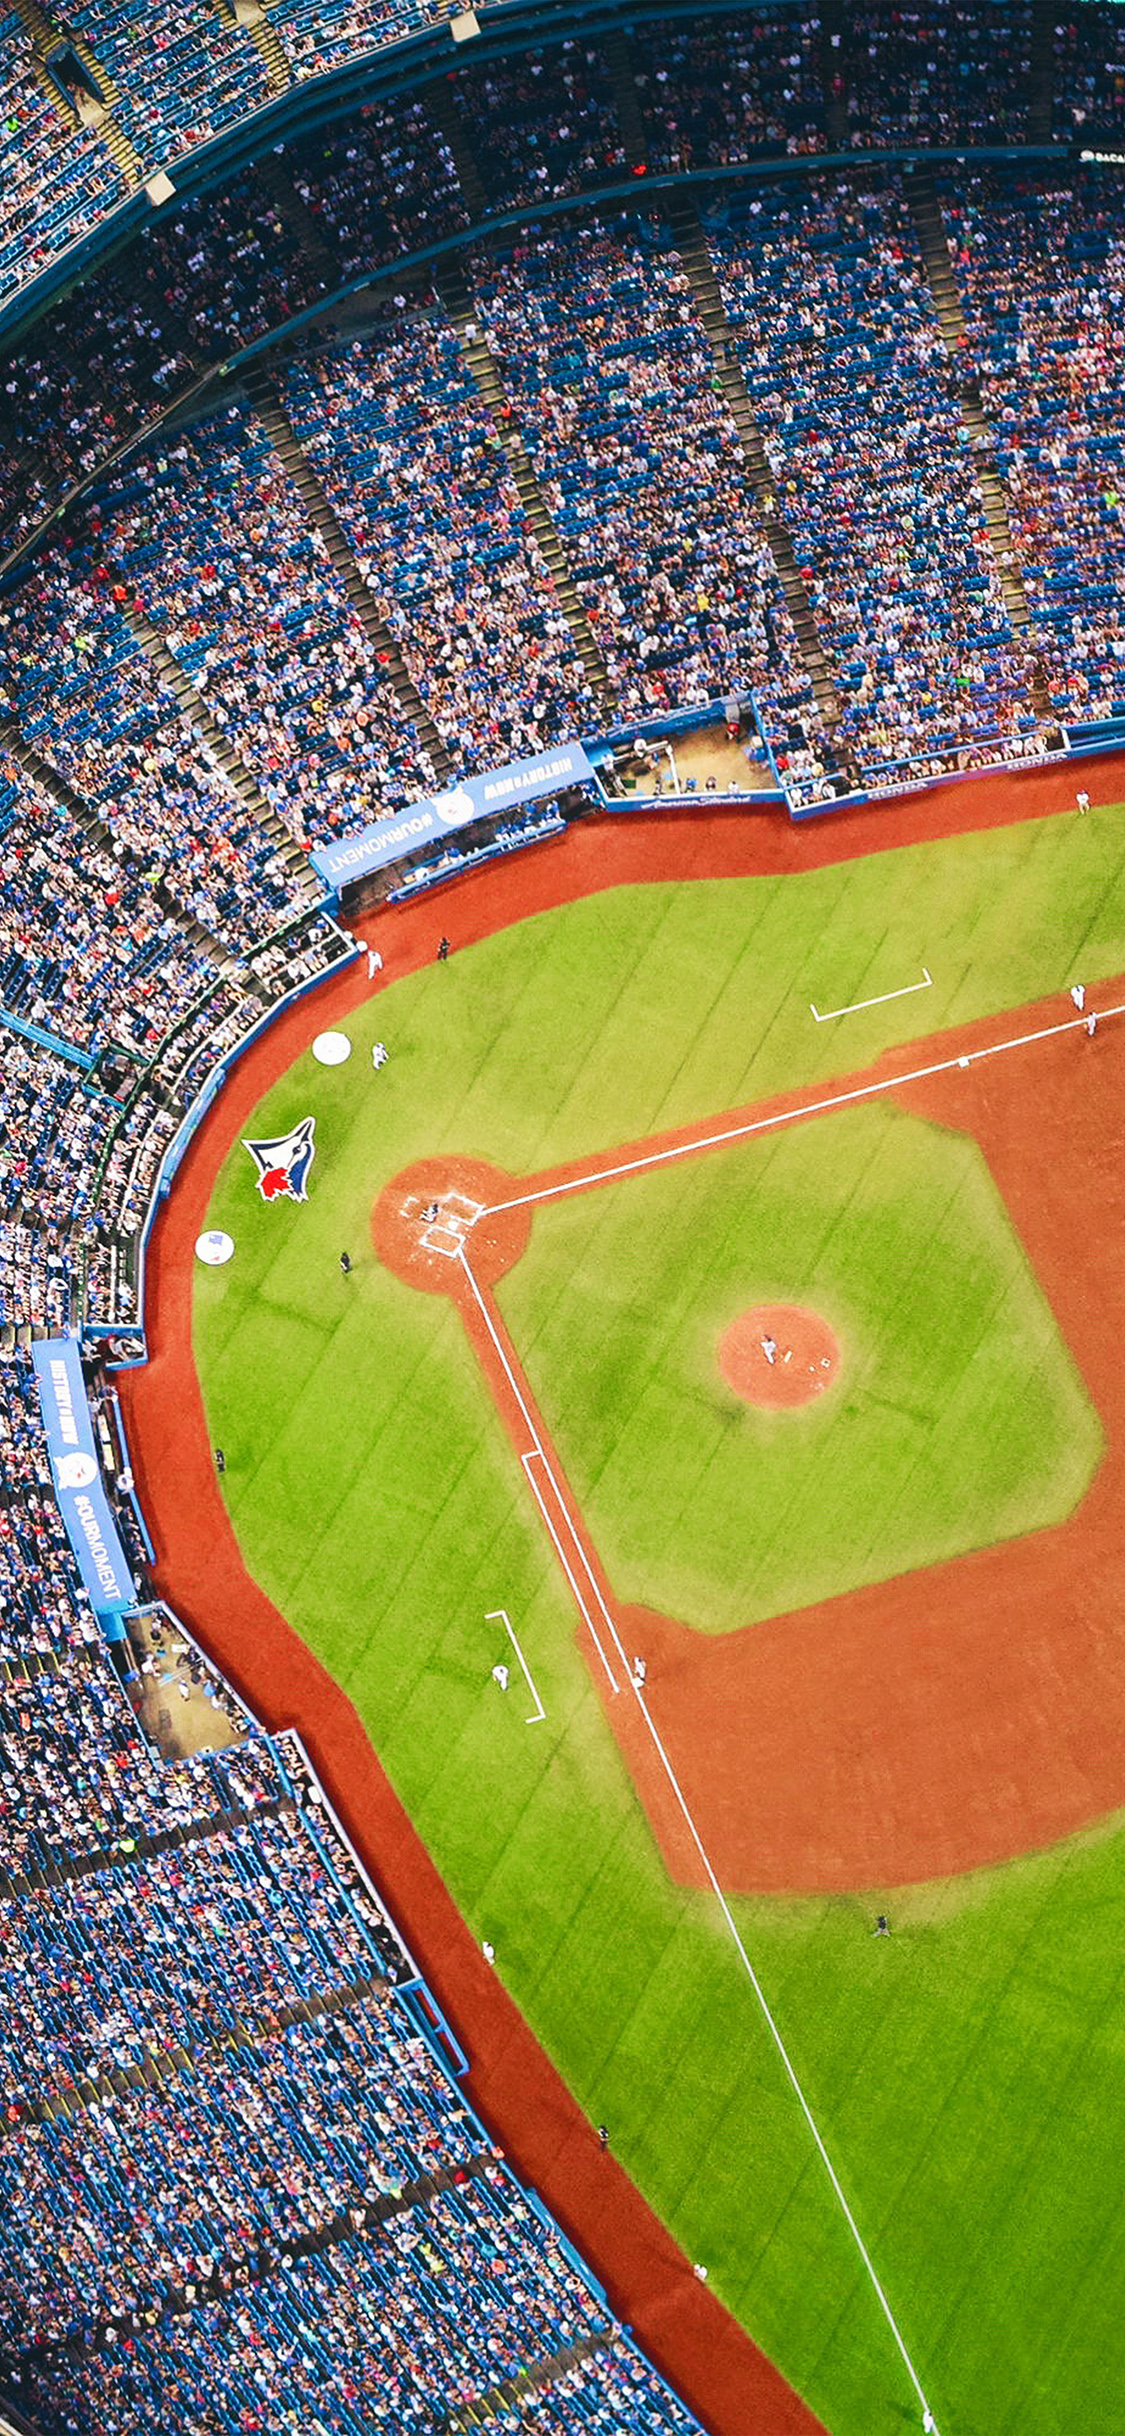 iPhone X wallpaper. bluejays baseball mlb field sports